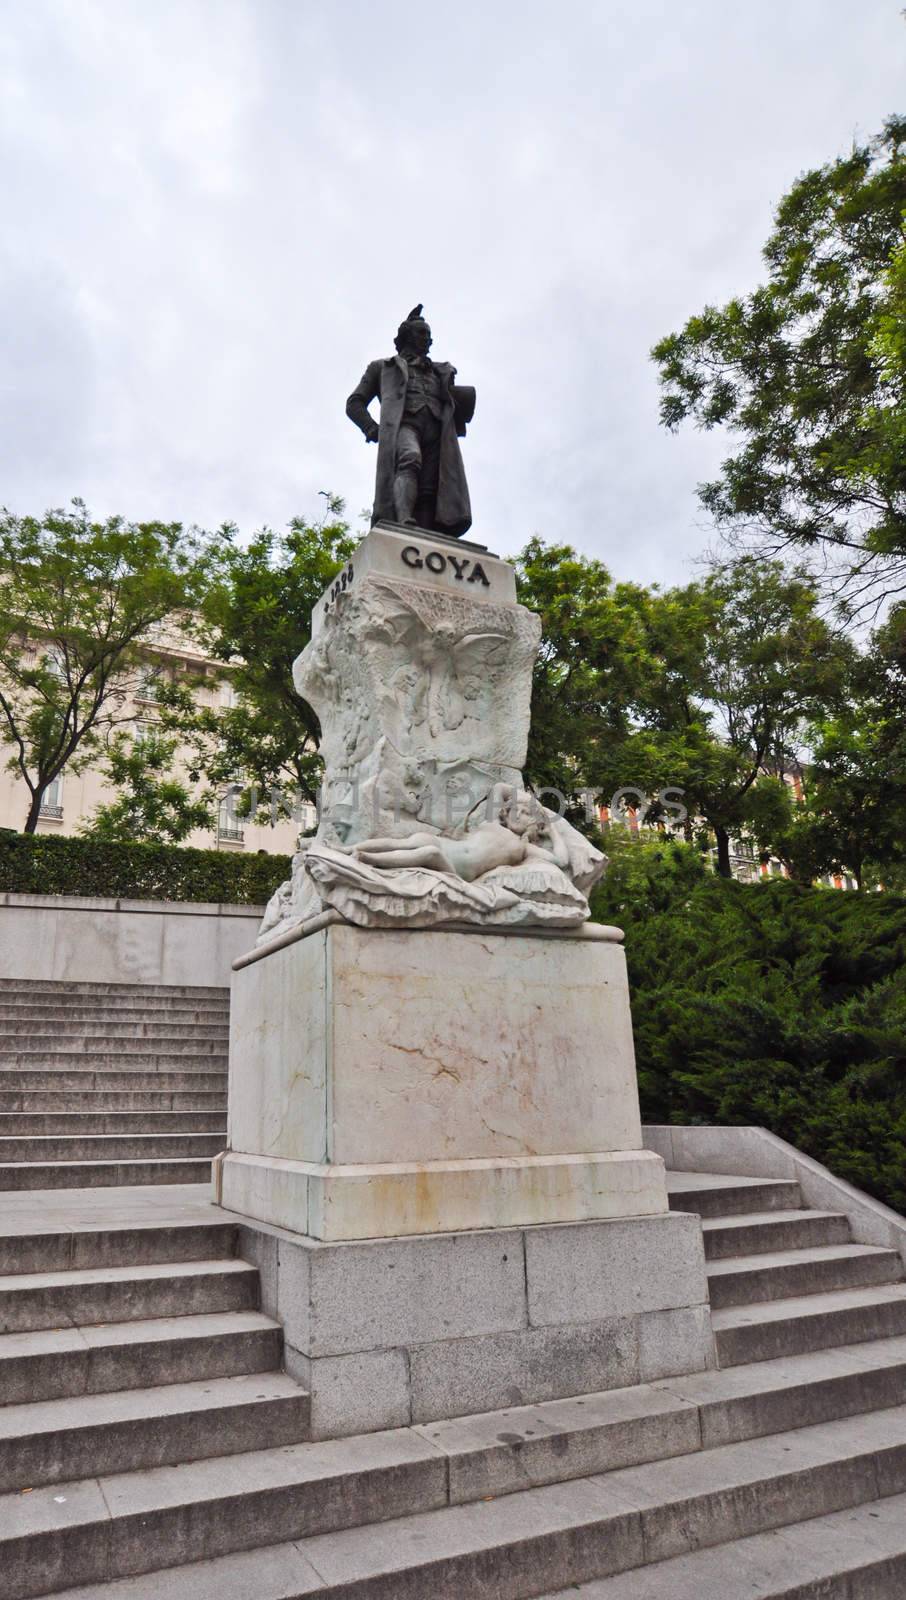 Francisco José de Goya y Lucientes statue in Madrid, Spain by vlaru